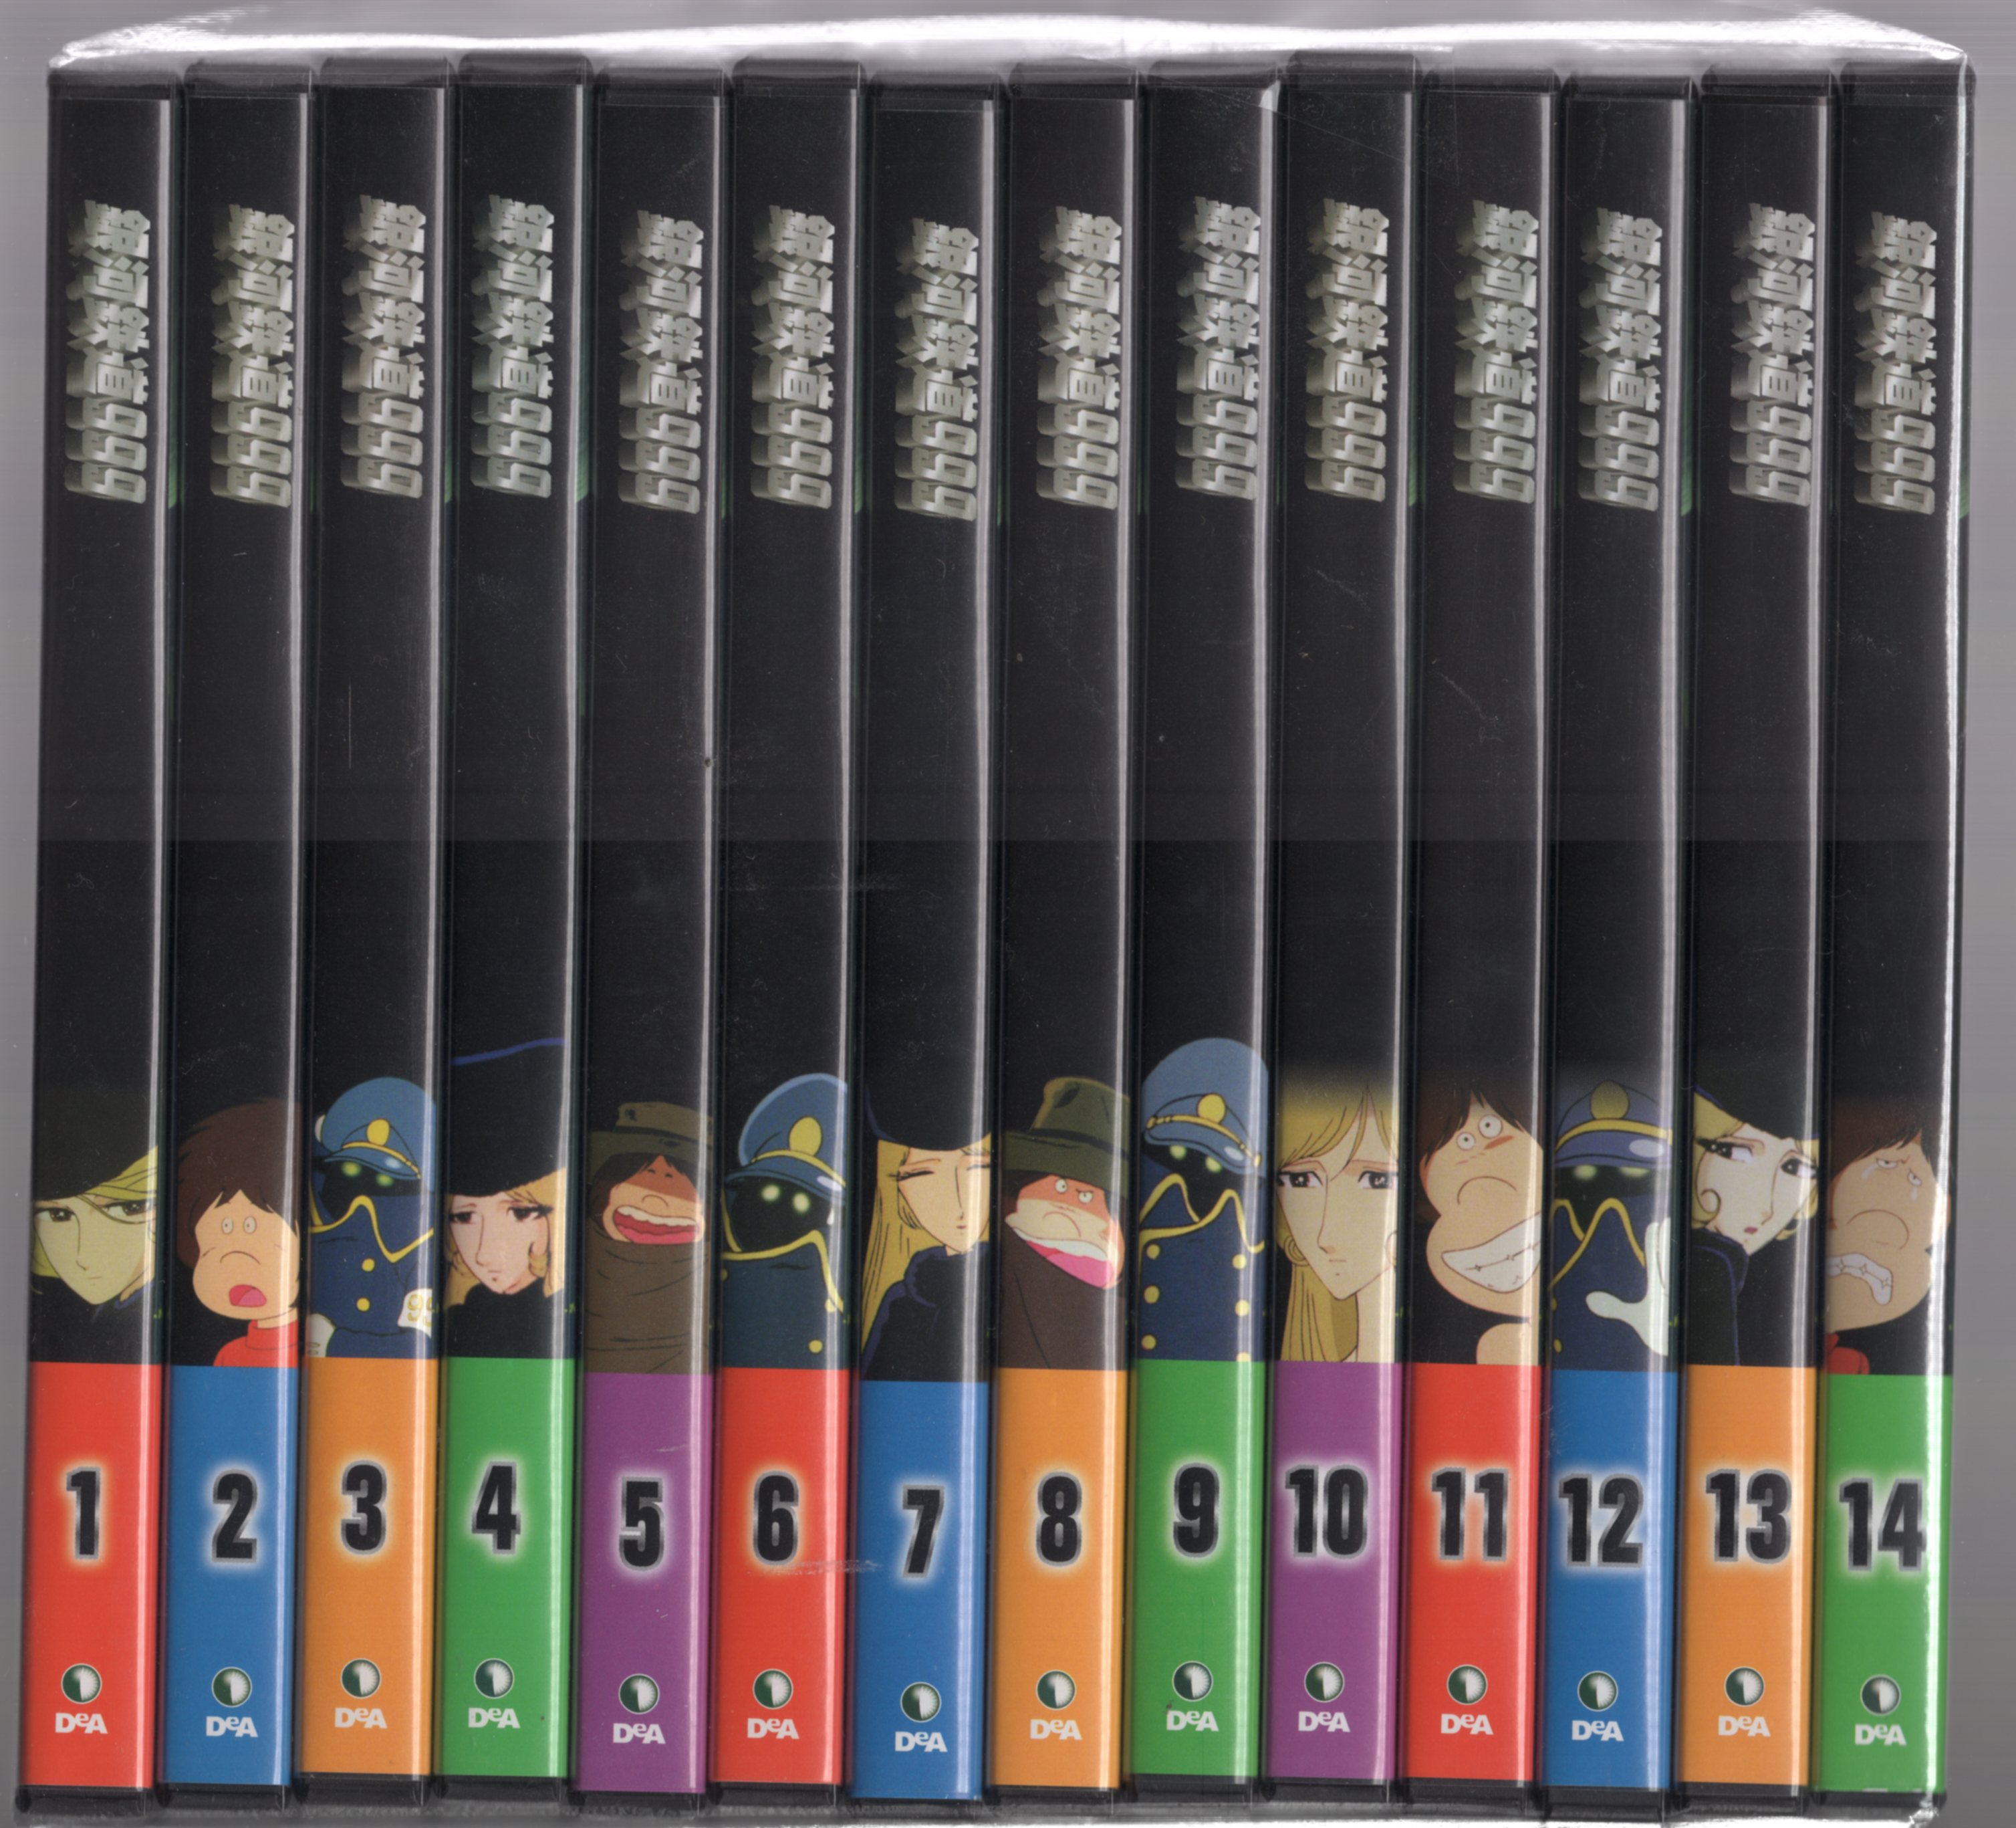 デアゴスティーニ 銀河鉄道999 DVDコレクション セット松本零士